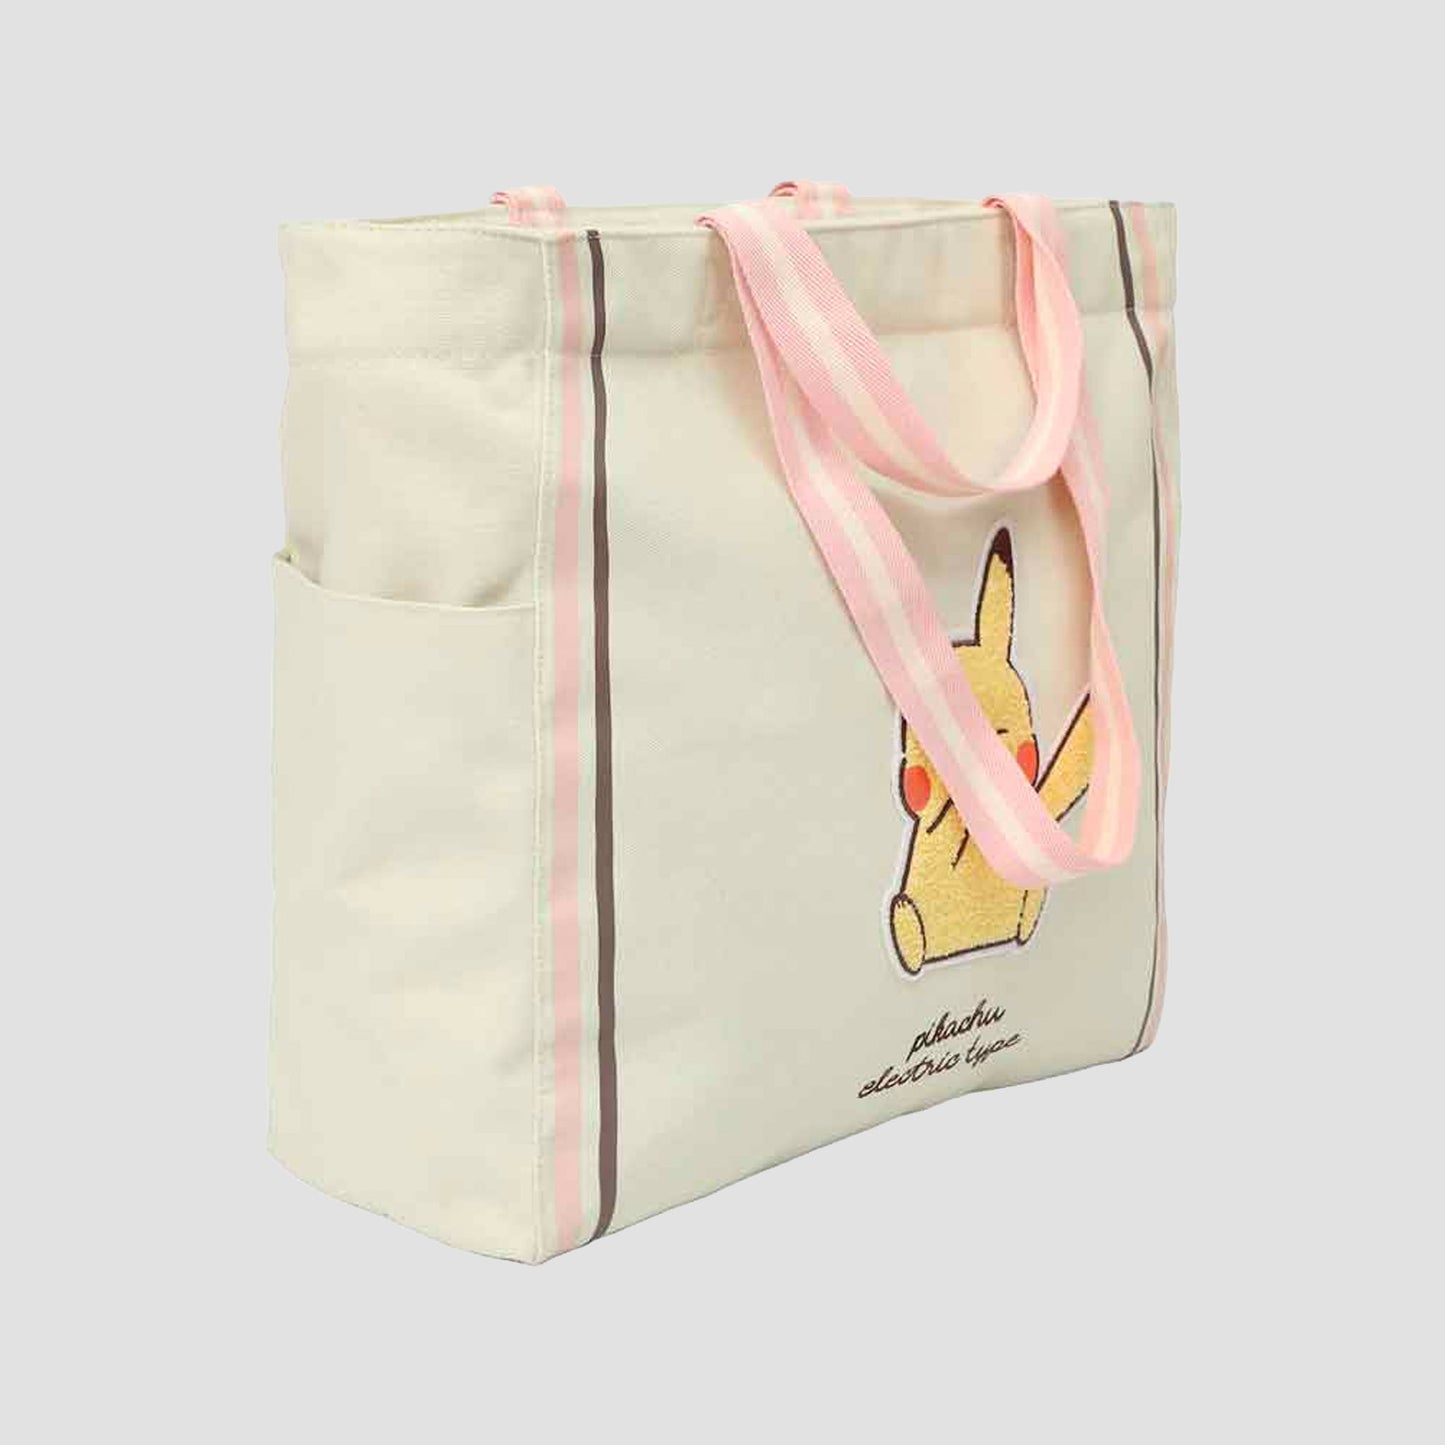 Pikachu Electric Type (Pokemon) Tote Bag